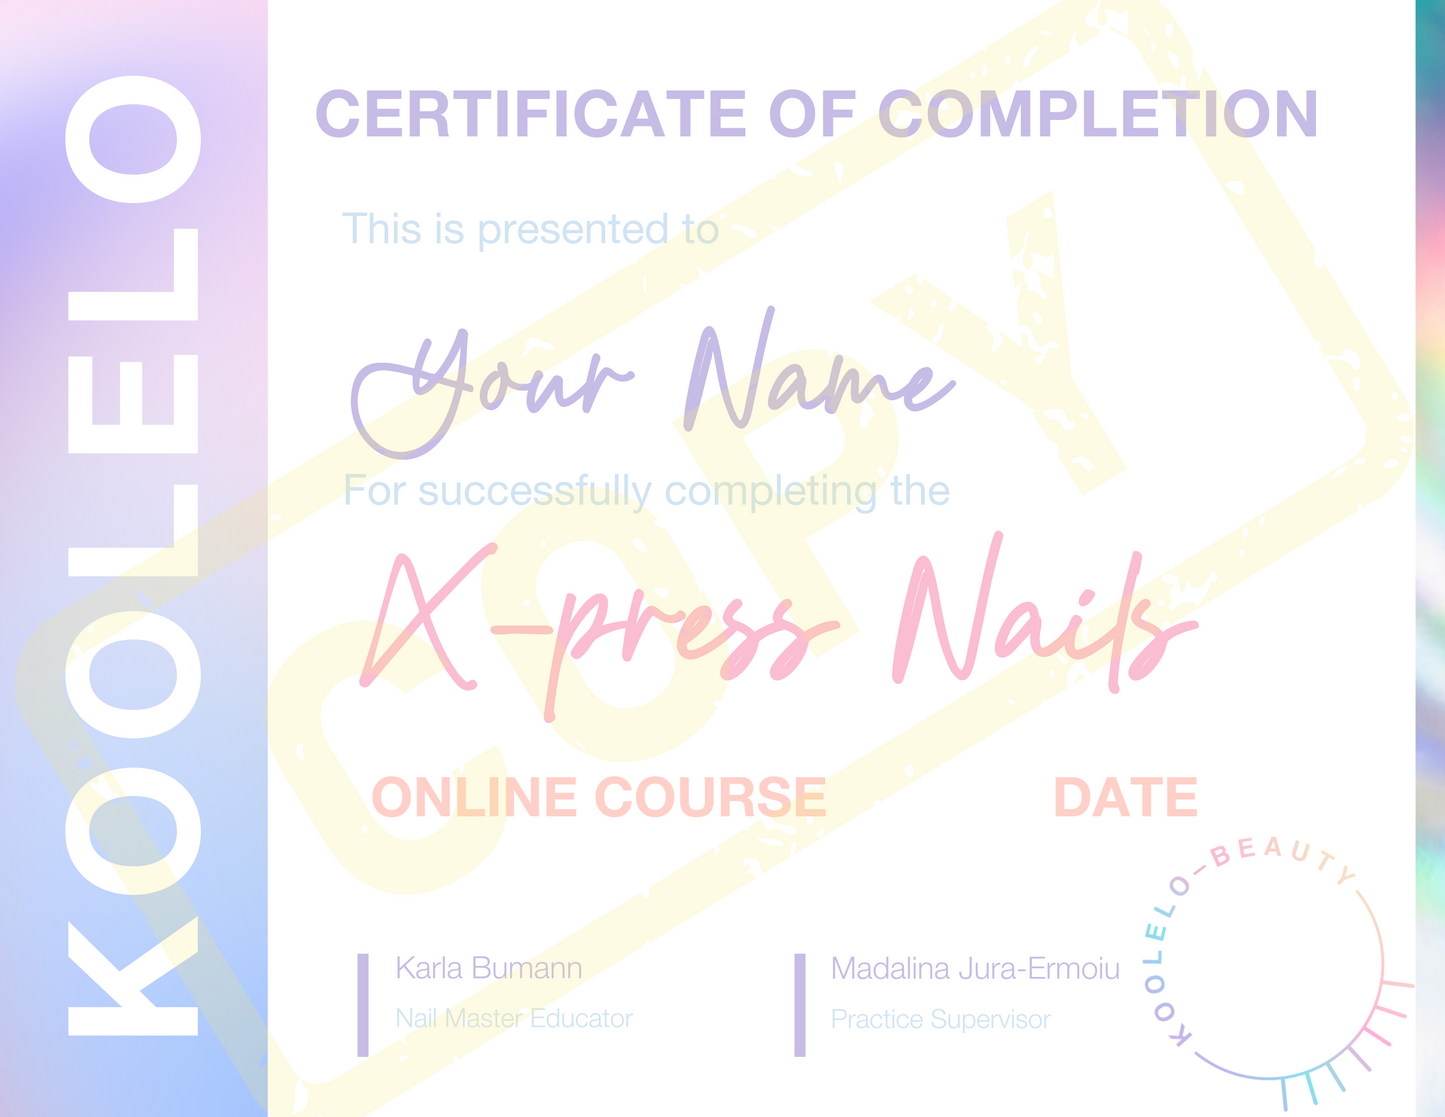 X-PRESS NAILS - Kickstart Your Nail Career Course